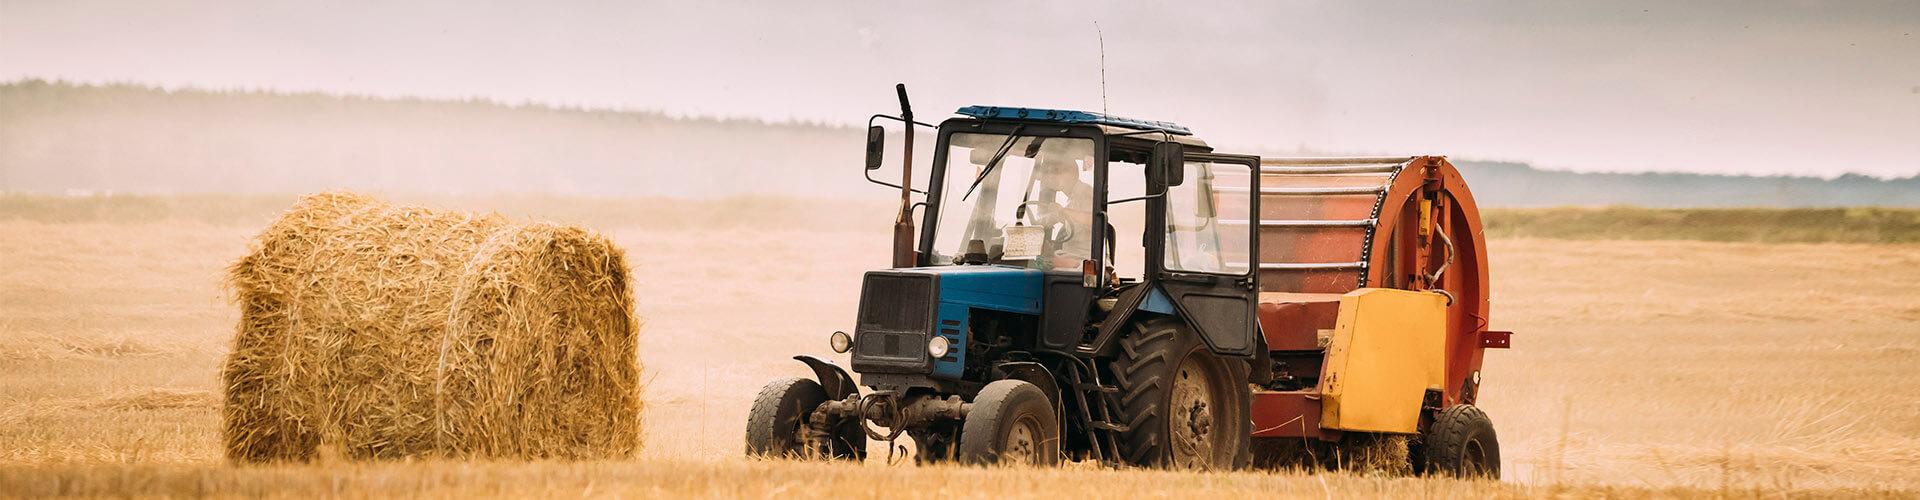 Assegurances Agràries - Tractor blau en el camp recollint palla per a donar menjar al bestiar